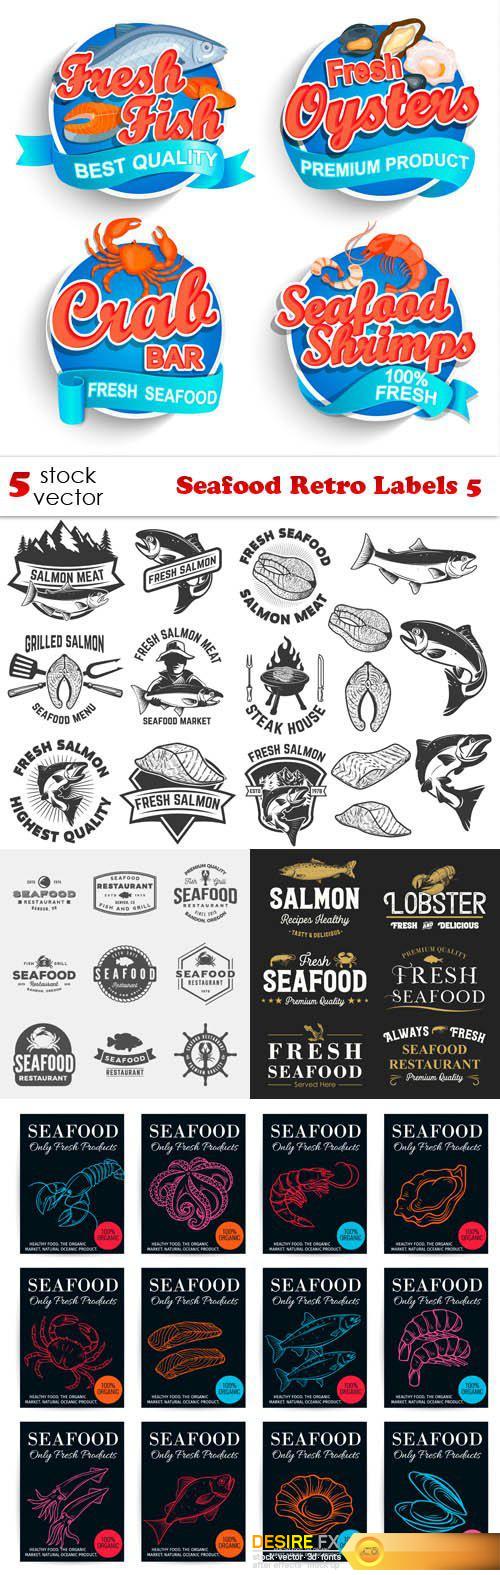 Vectors - Seafood Retro Labels 5